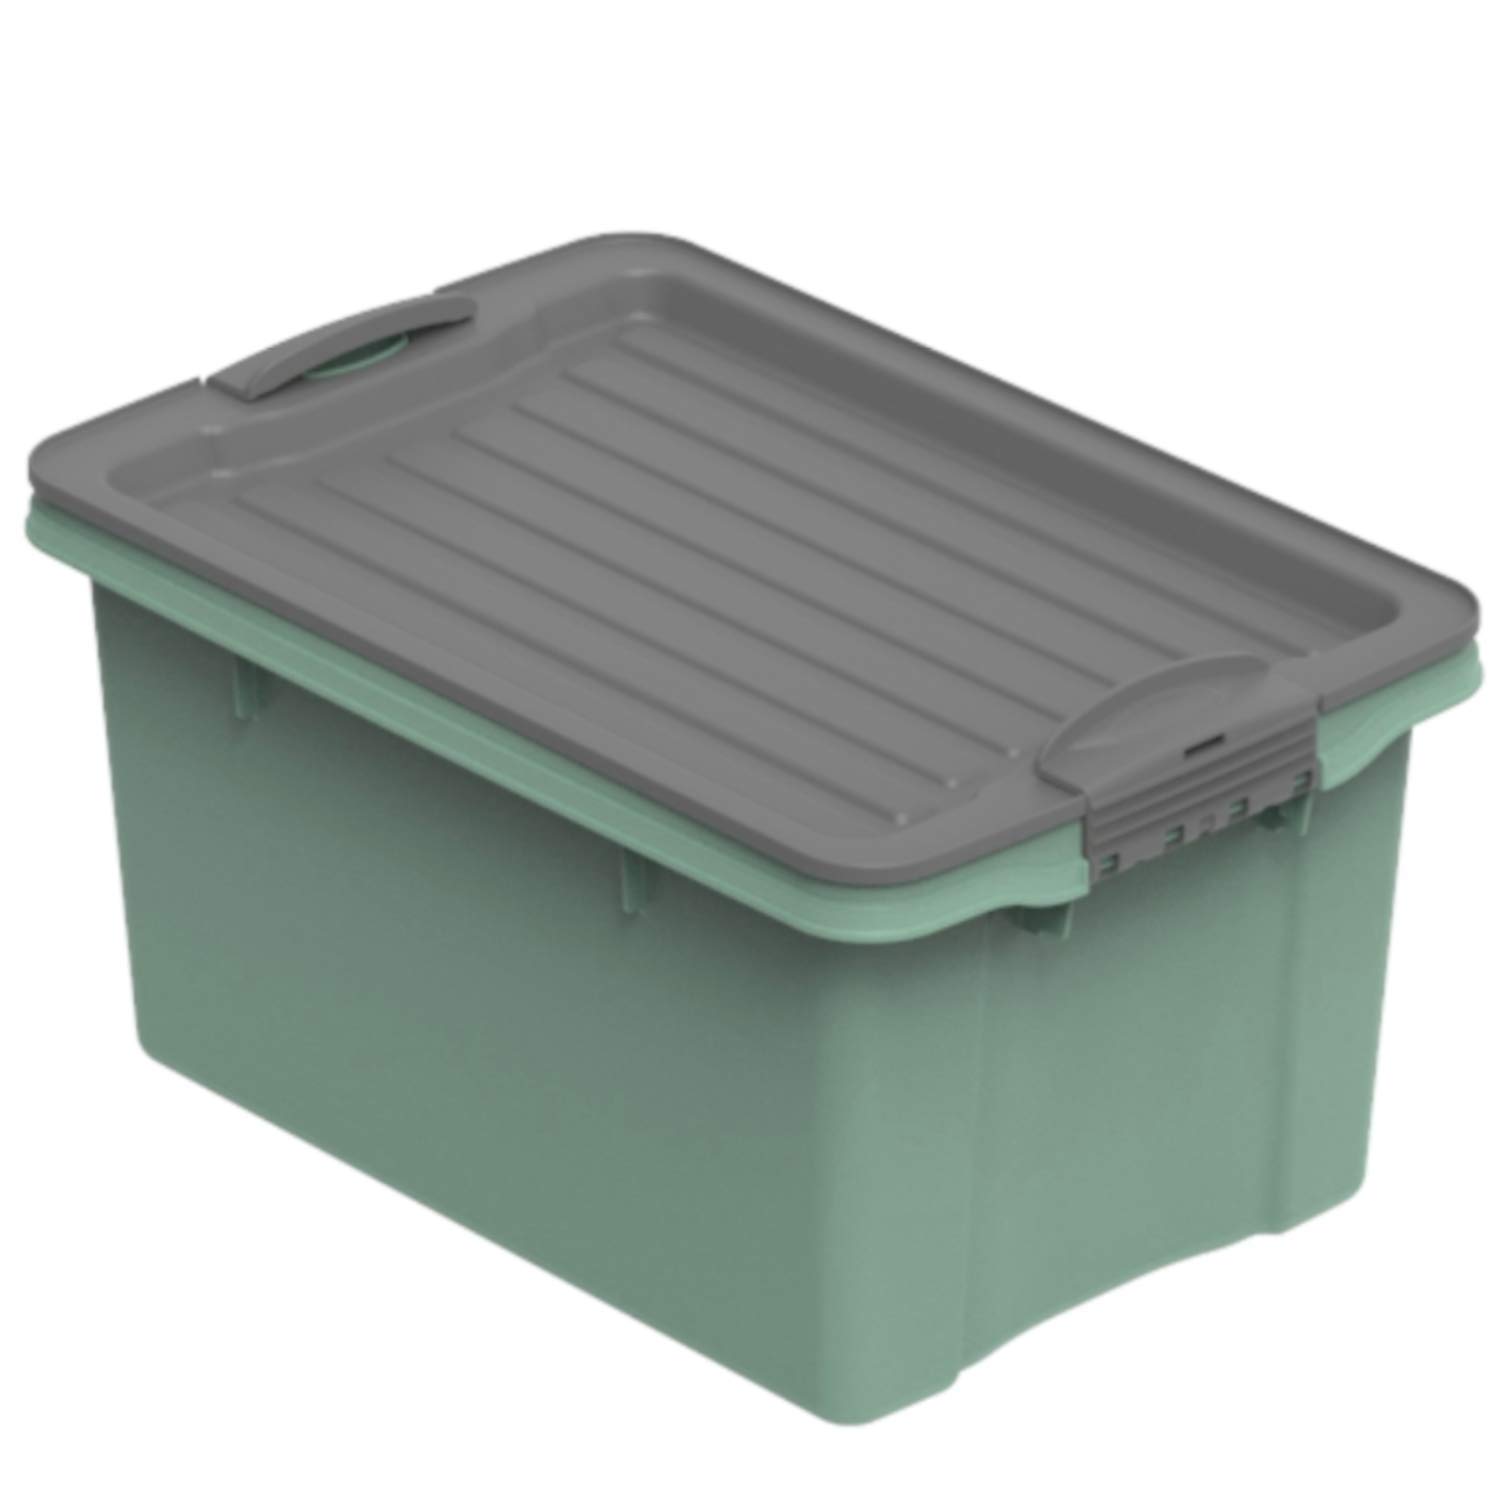 Ящик для хранения Compact 4,5л штабелируемый прозрачный, светло-зеленый ROTHO 1776205092PC в интернет-магазине meandhome.ru